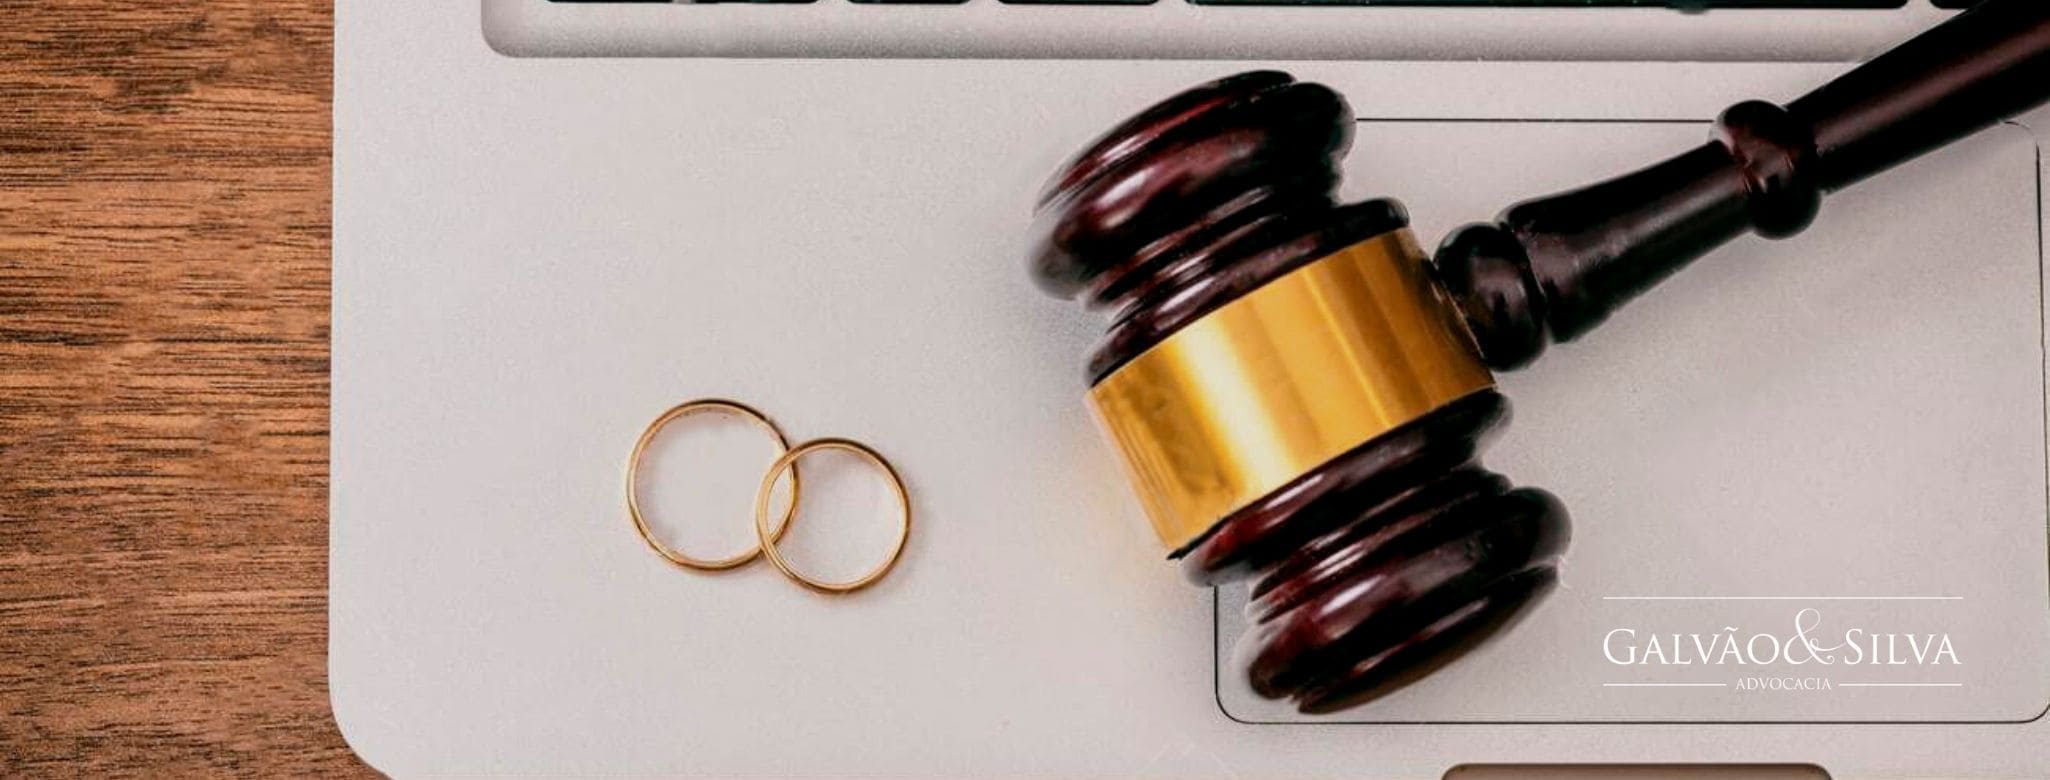 Divórcio virtual: o que terá de diferente e como deverá funcionar?